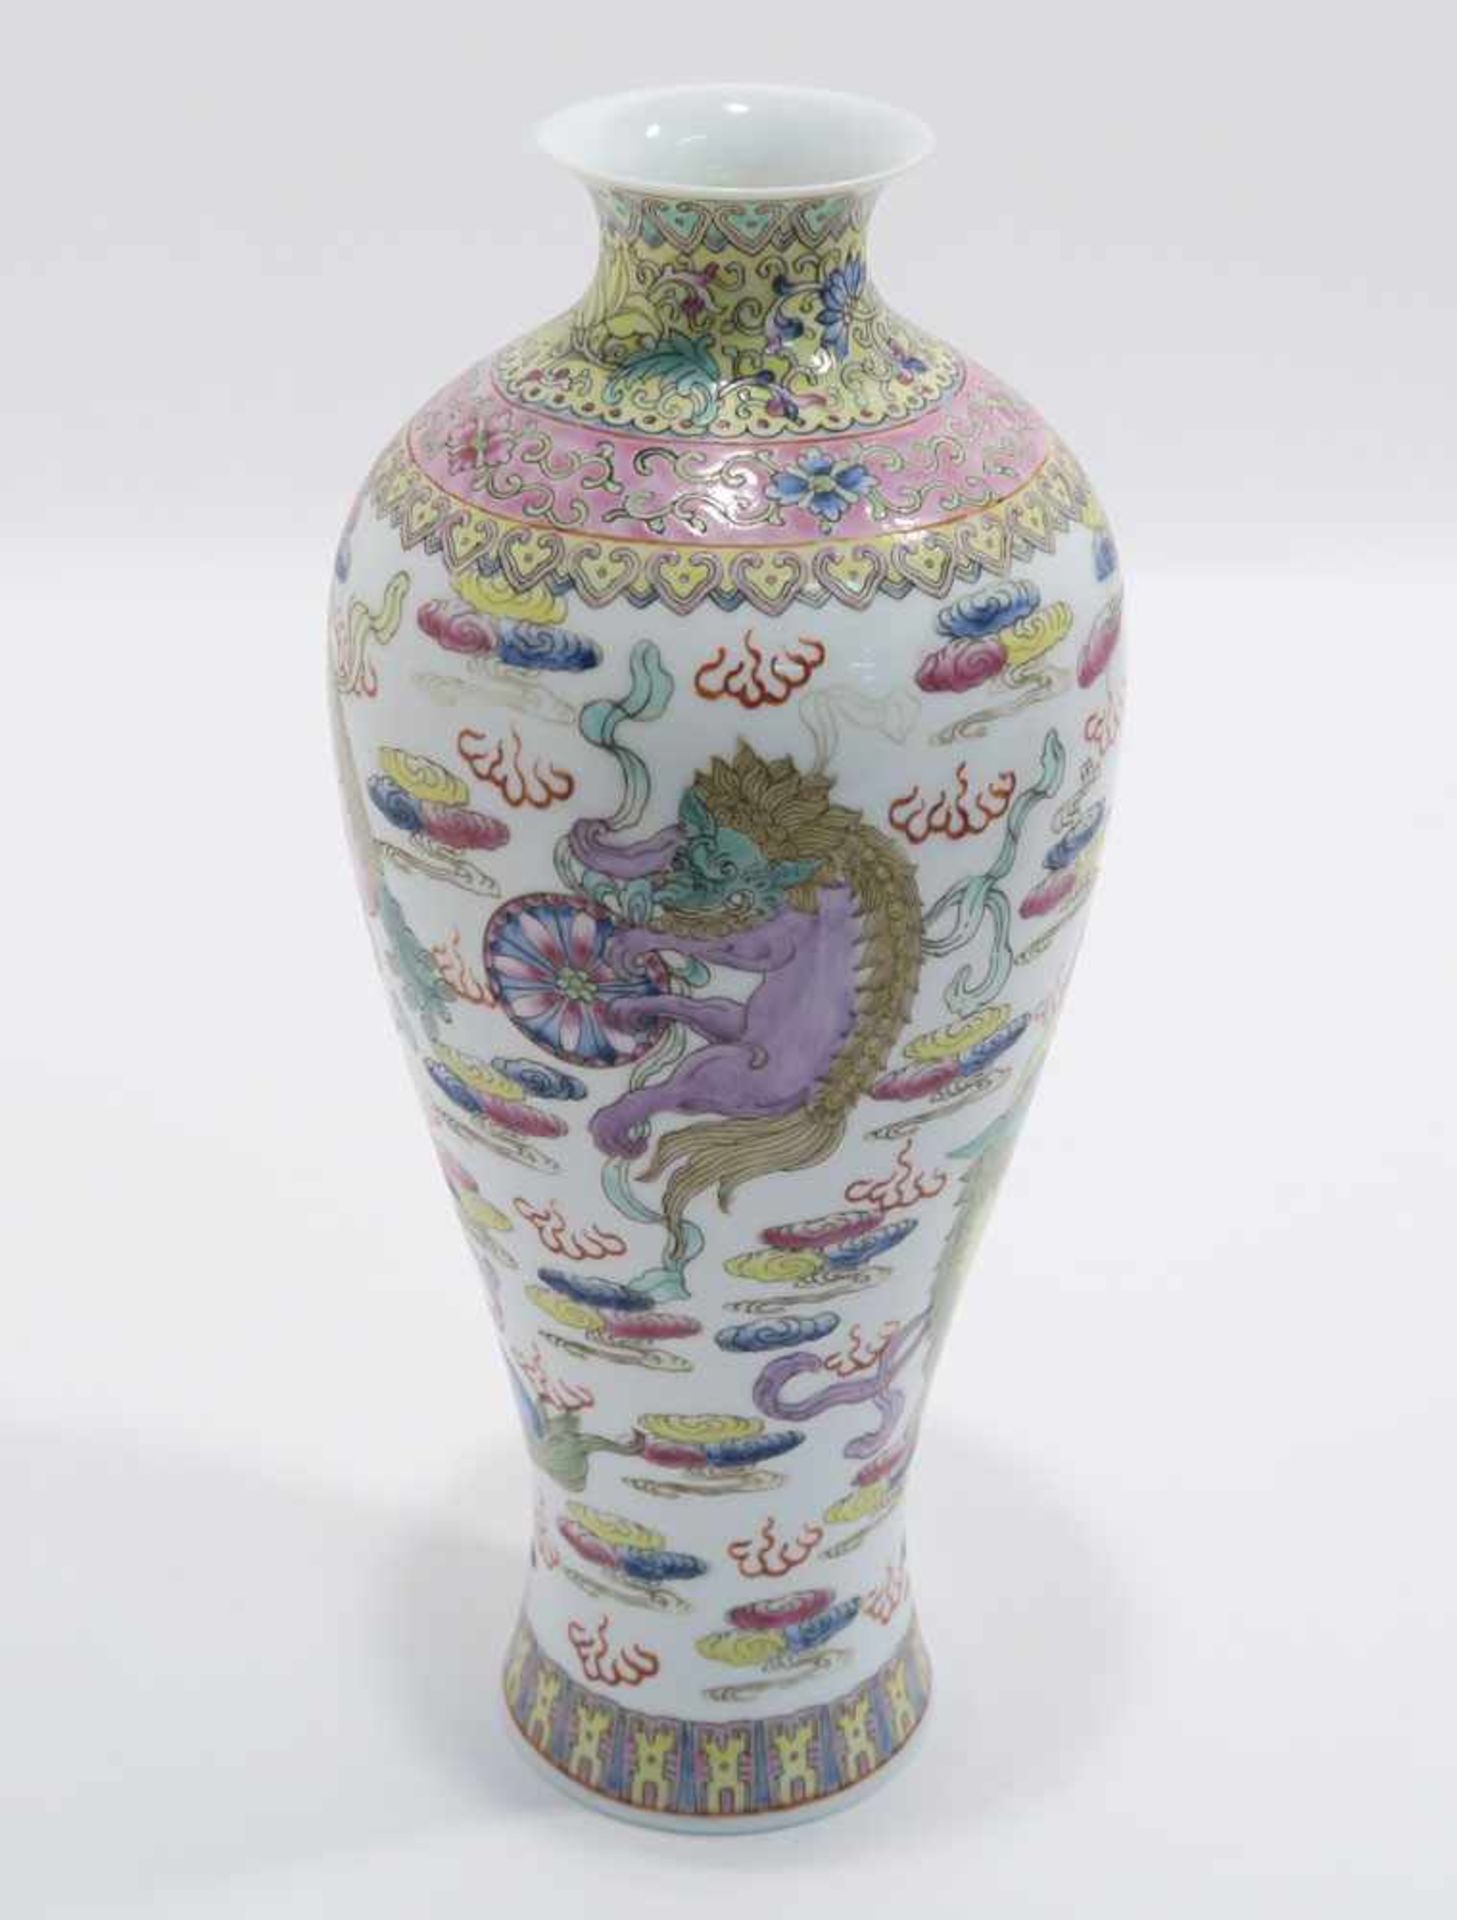 Opiumpfeife / Vase / DeckelgefäßChina. Porzellan, tlw. mit Kupfermontierung. Verschiedene bunte bzw. - Bild 16 aus 21